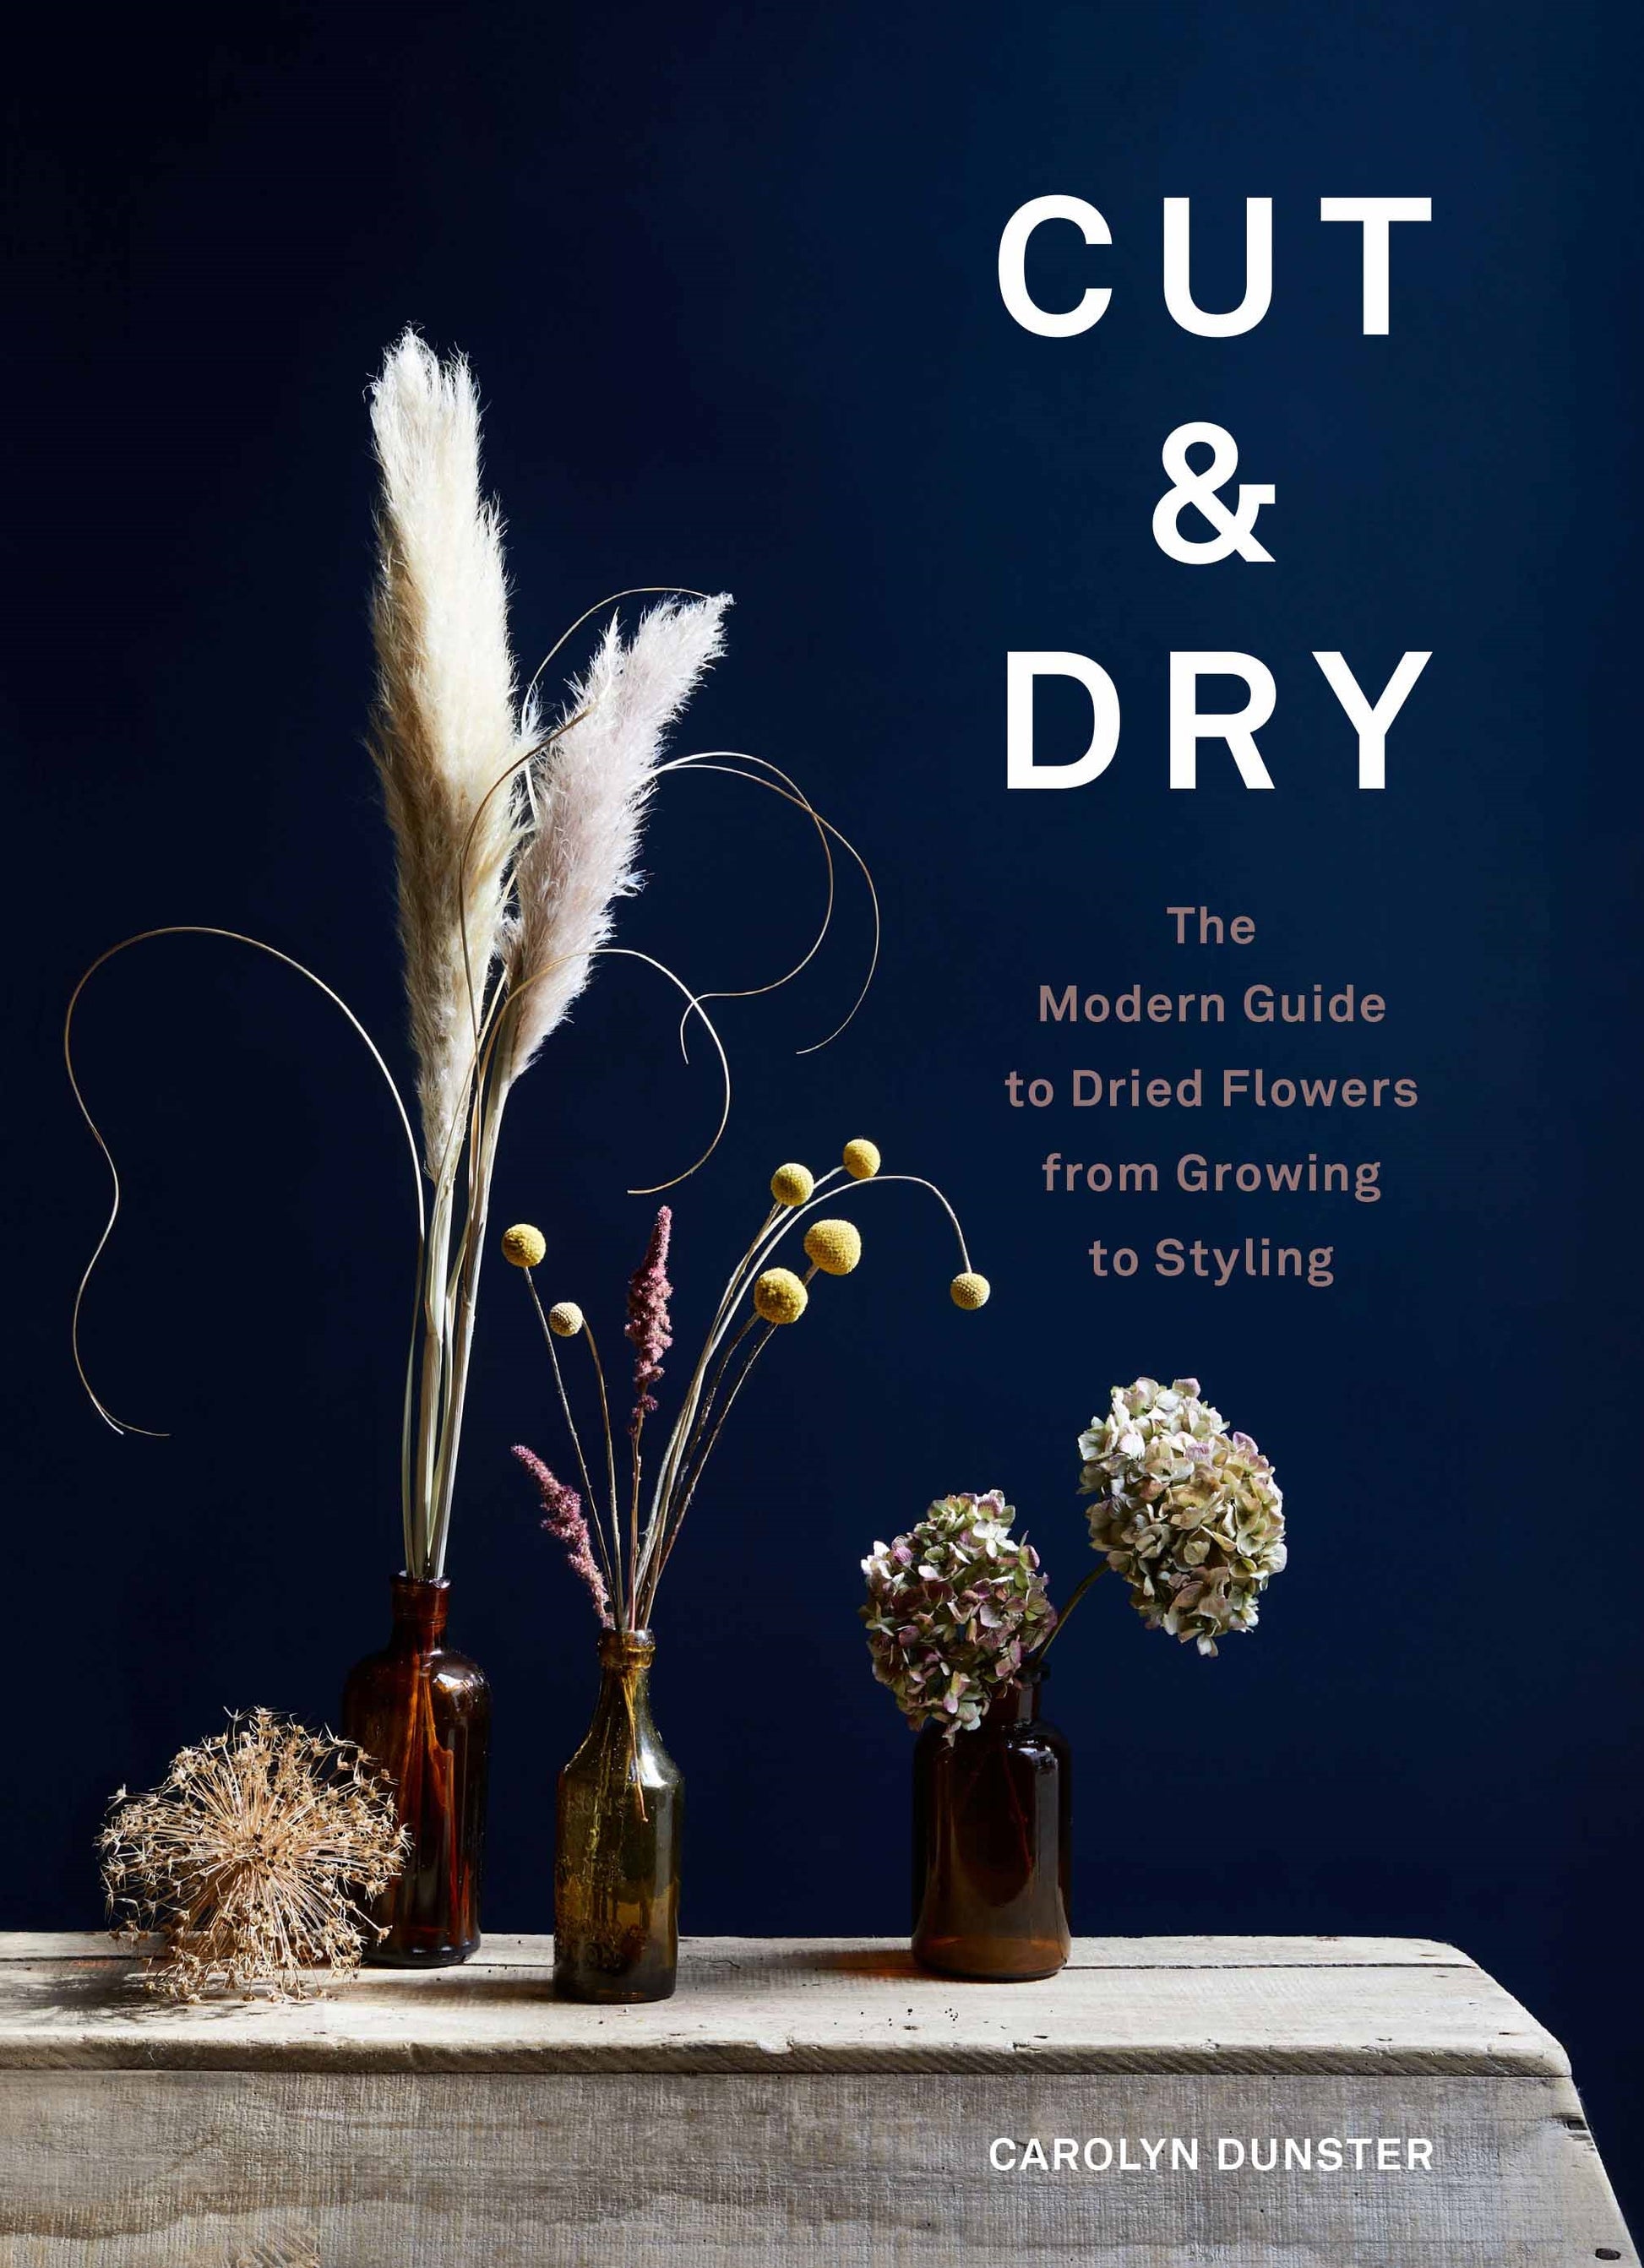 Cut & Dry by Carolyn Dunster